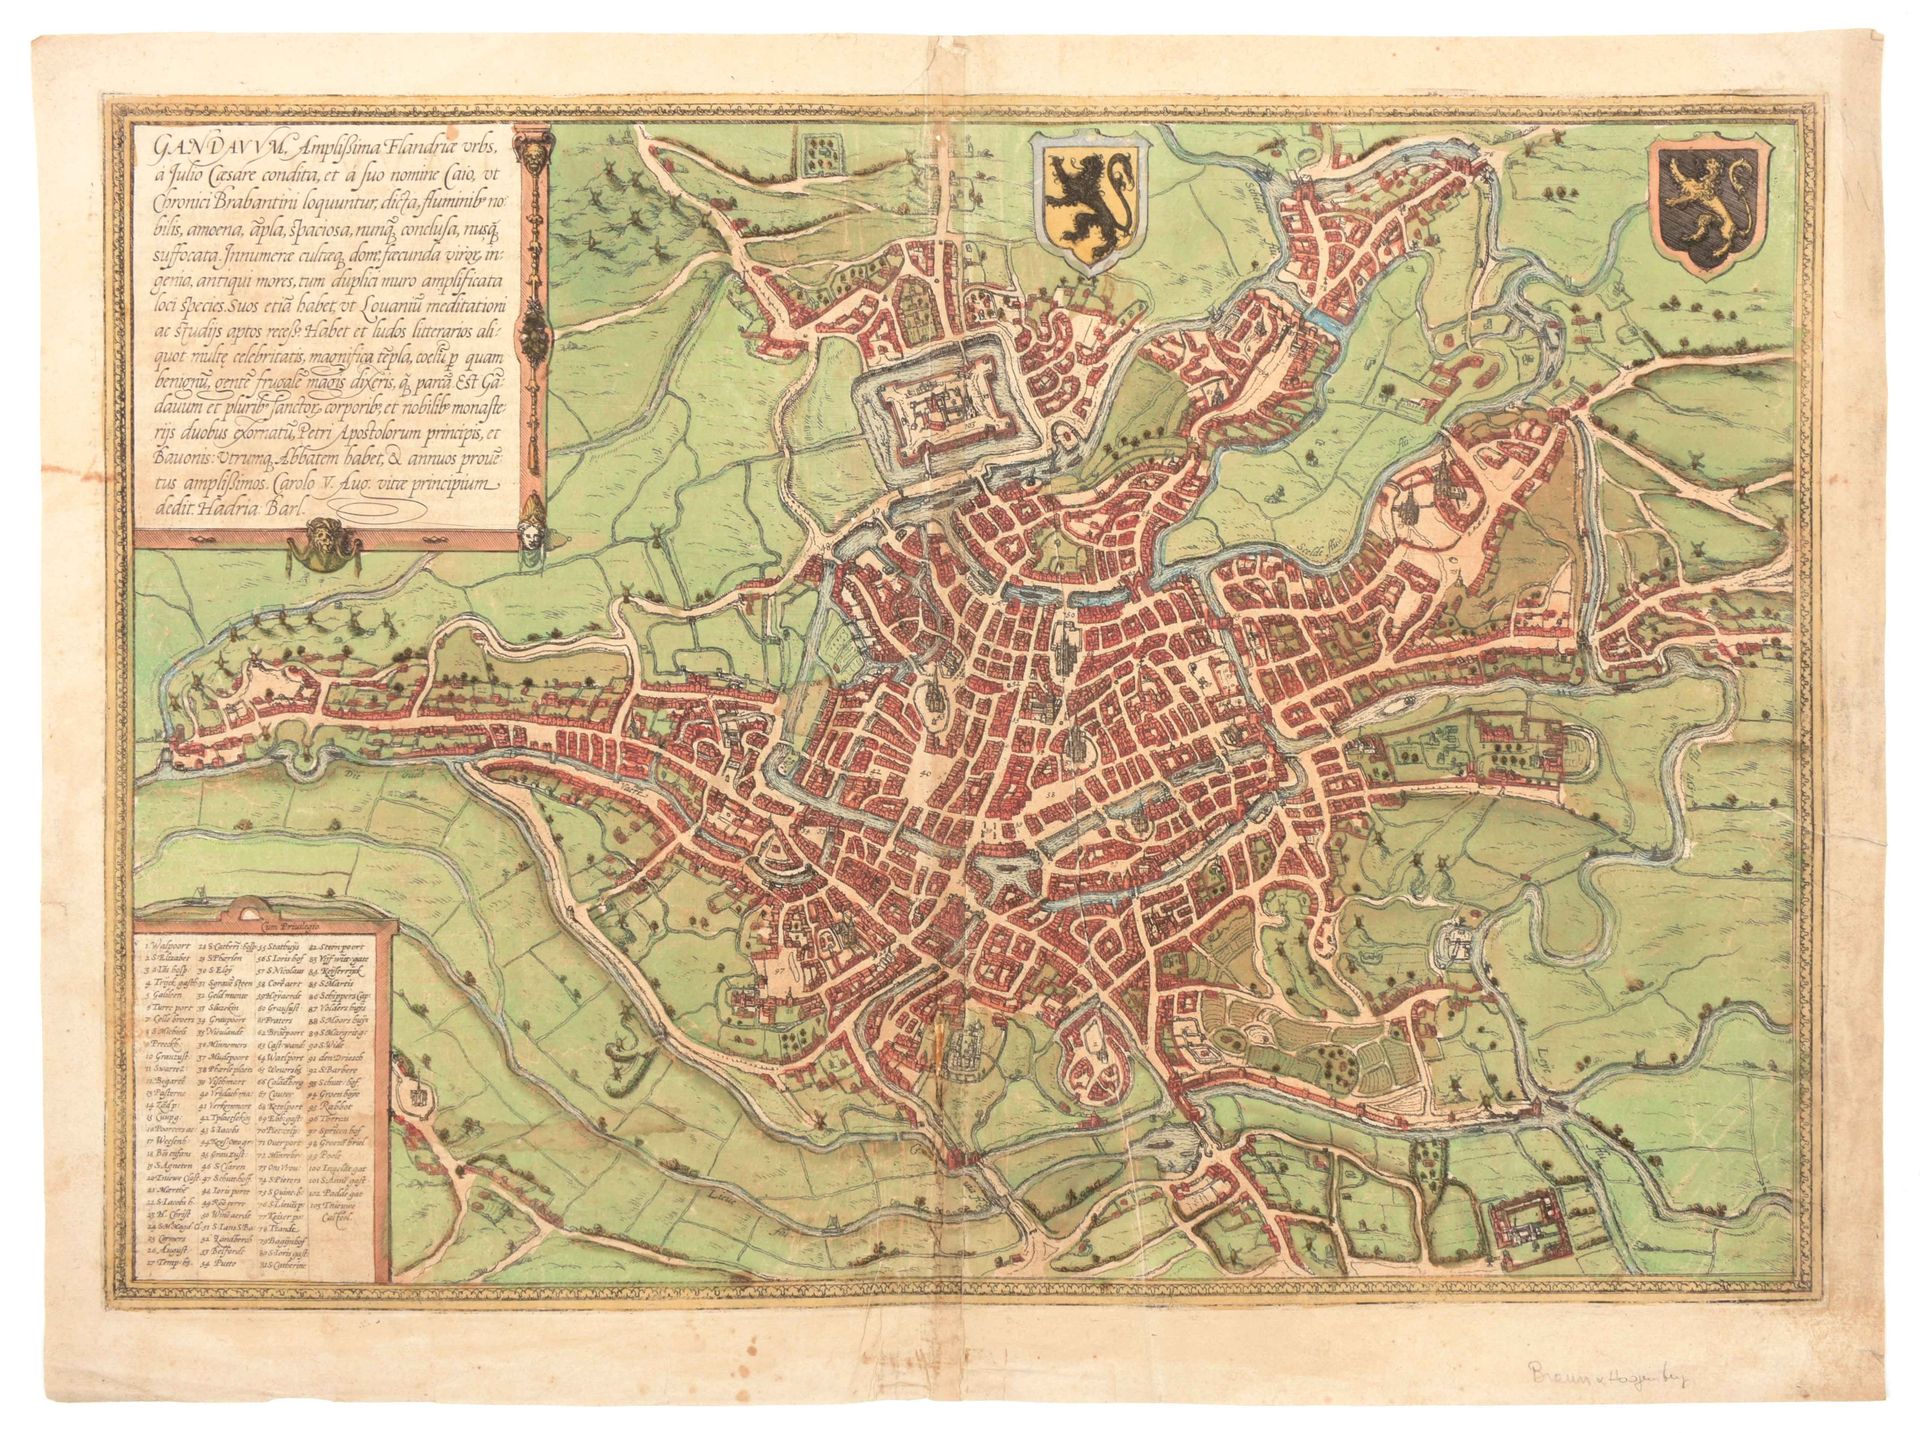 [Gent] Gandavum amplissima Flandriae urbs

Grabado original (34 x 48 cm) con el &hellip;